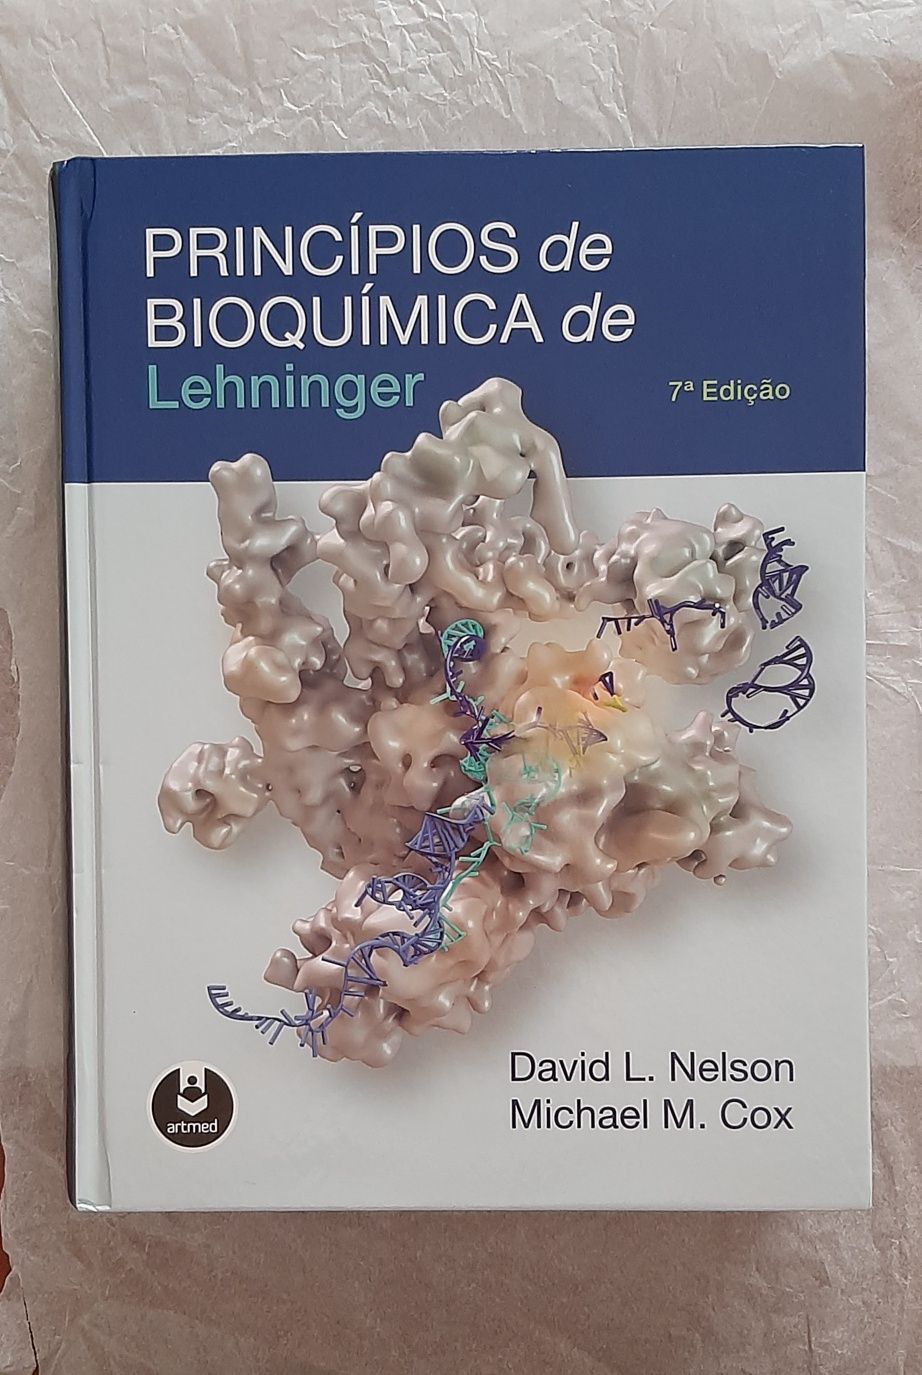 Livro "Princípios de Bioquímica de Lehninger